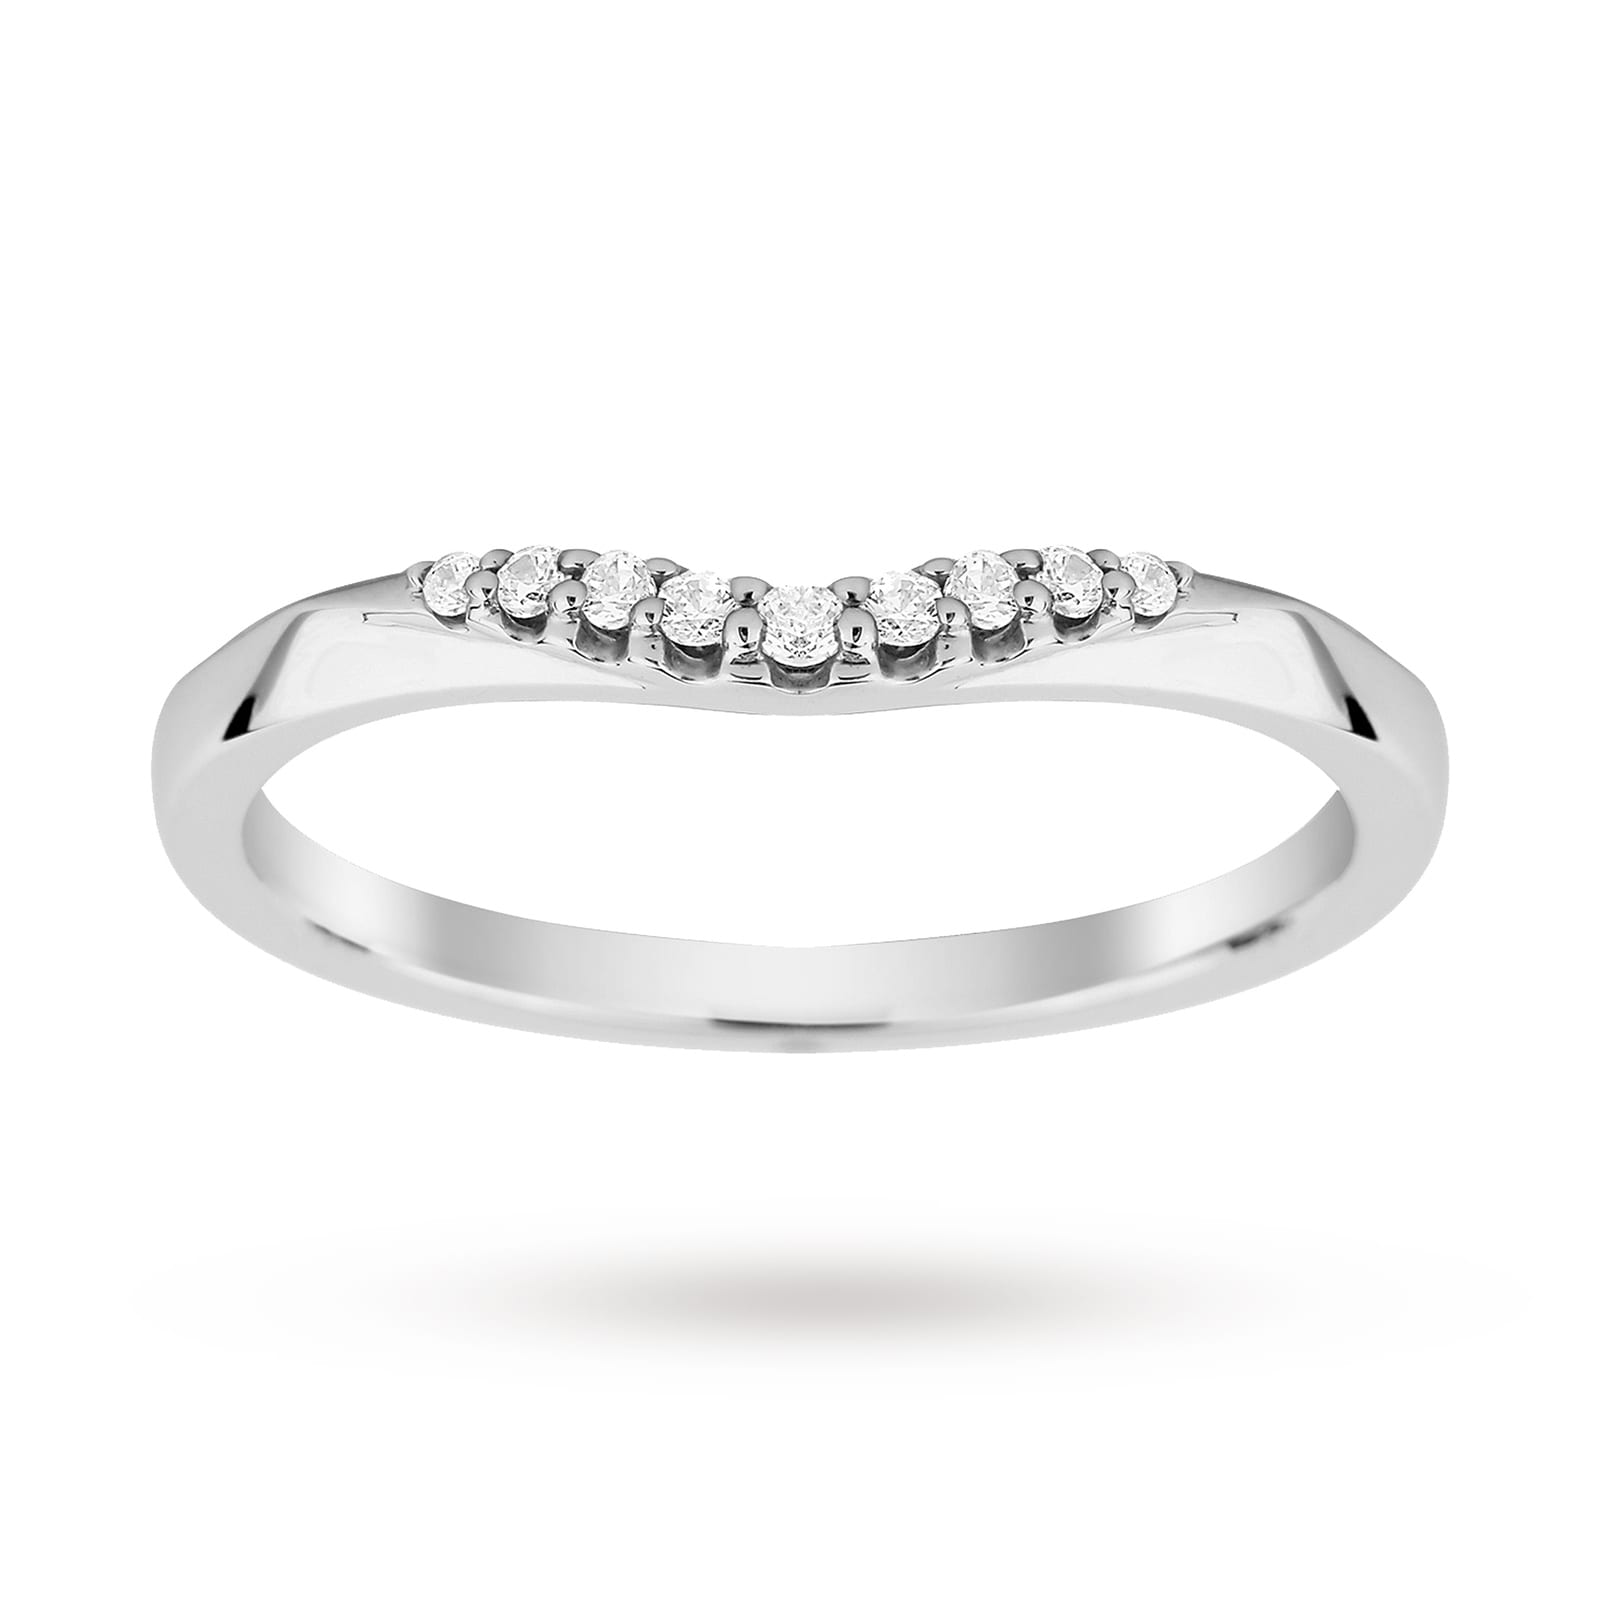 Platinum 0.10 Total Carat Weight Diamond Wedding Band - Ring Size K